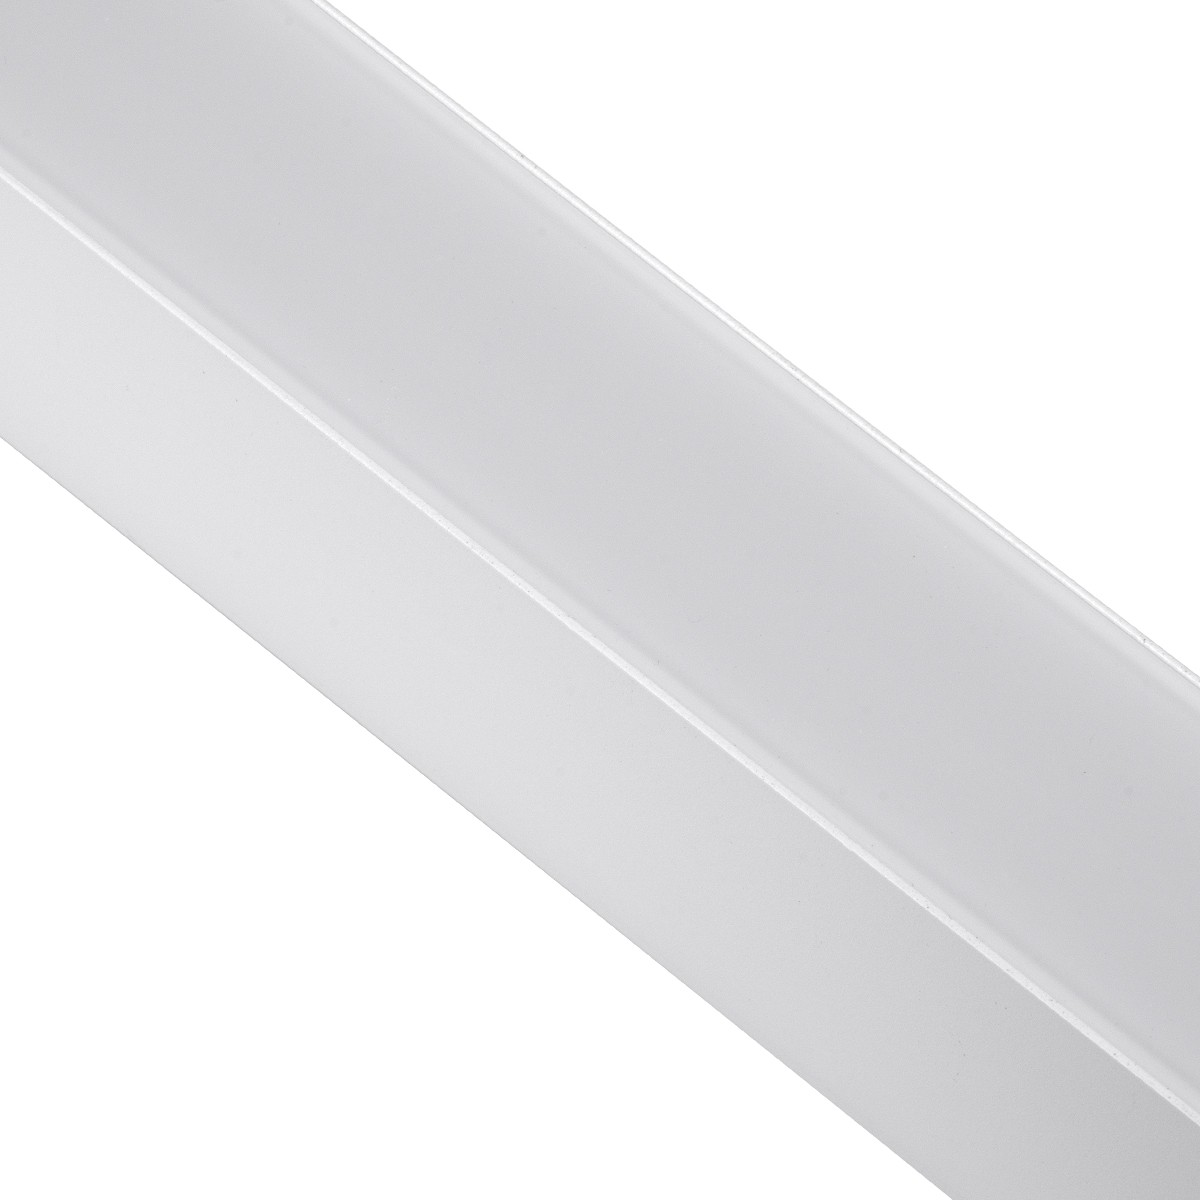 Led Γραμμικό Κρεμαστό Φωτιστικό Οροφής FELIX 54Watt Λευκό με Εναλλαγή Φωτισμού Μ120 x Π3.5 x Υ7cm